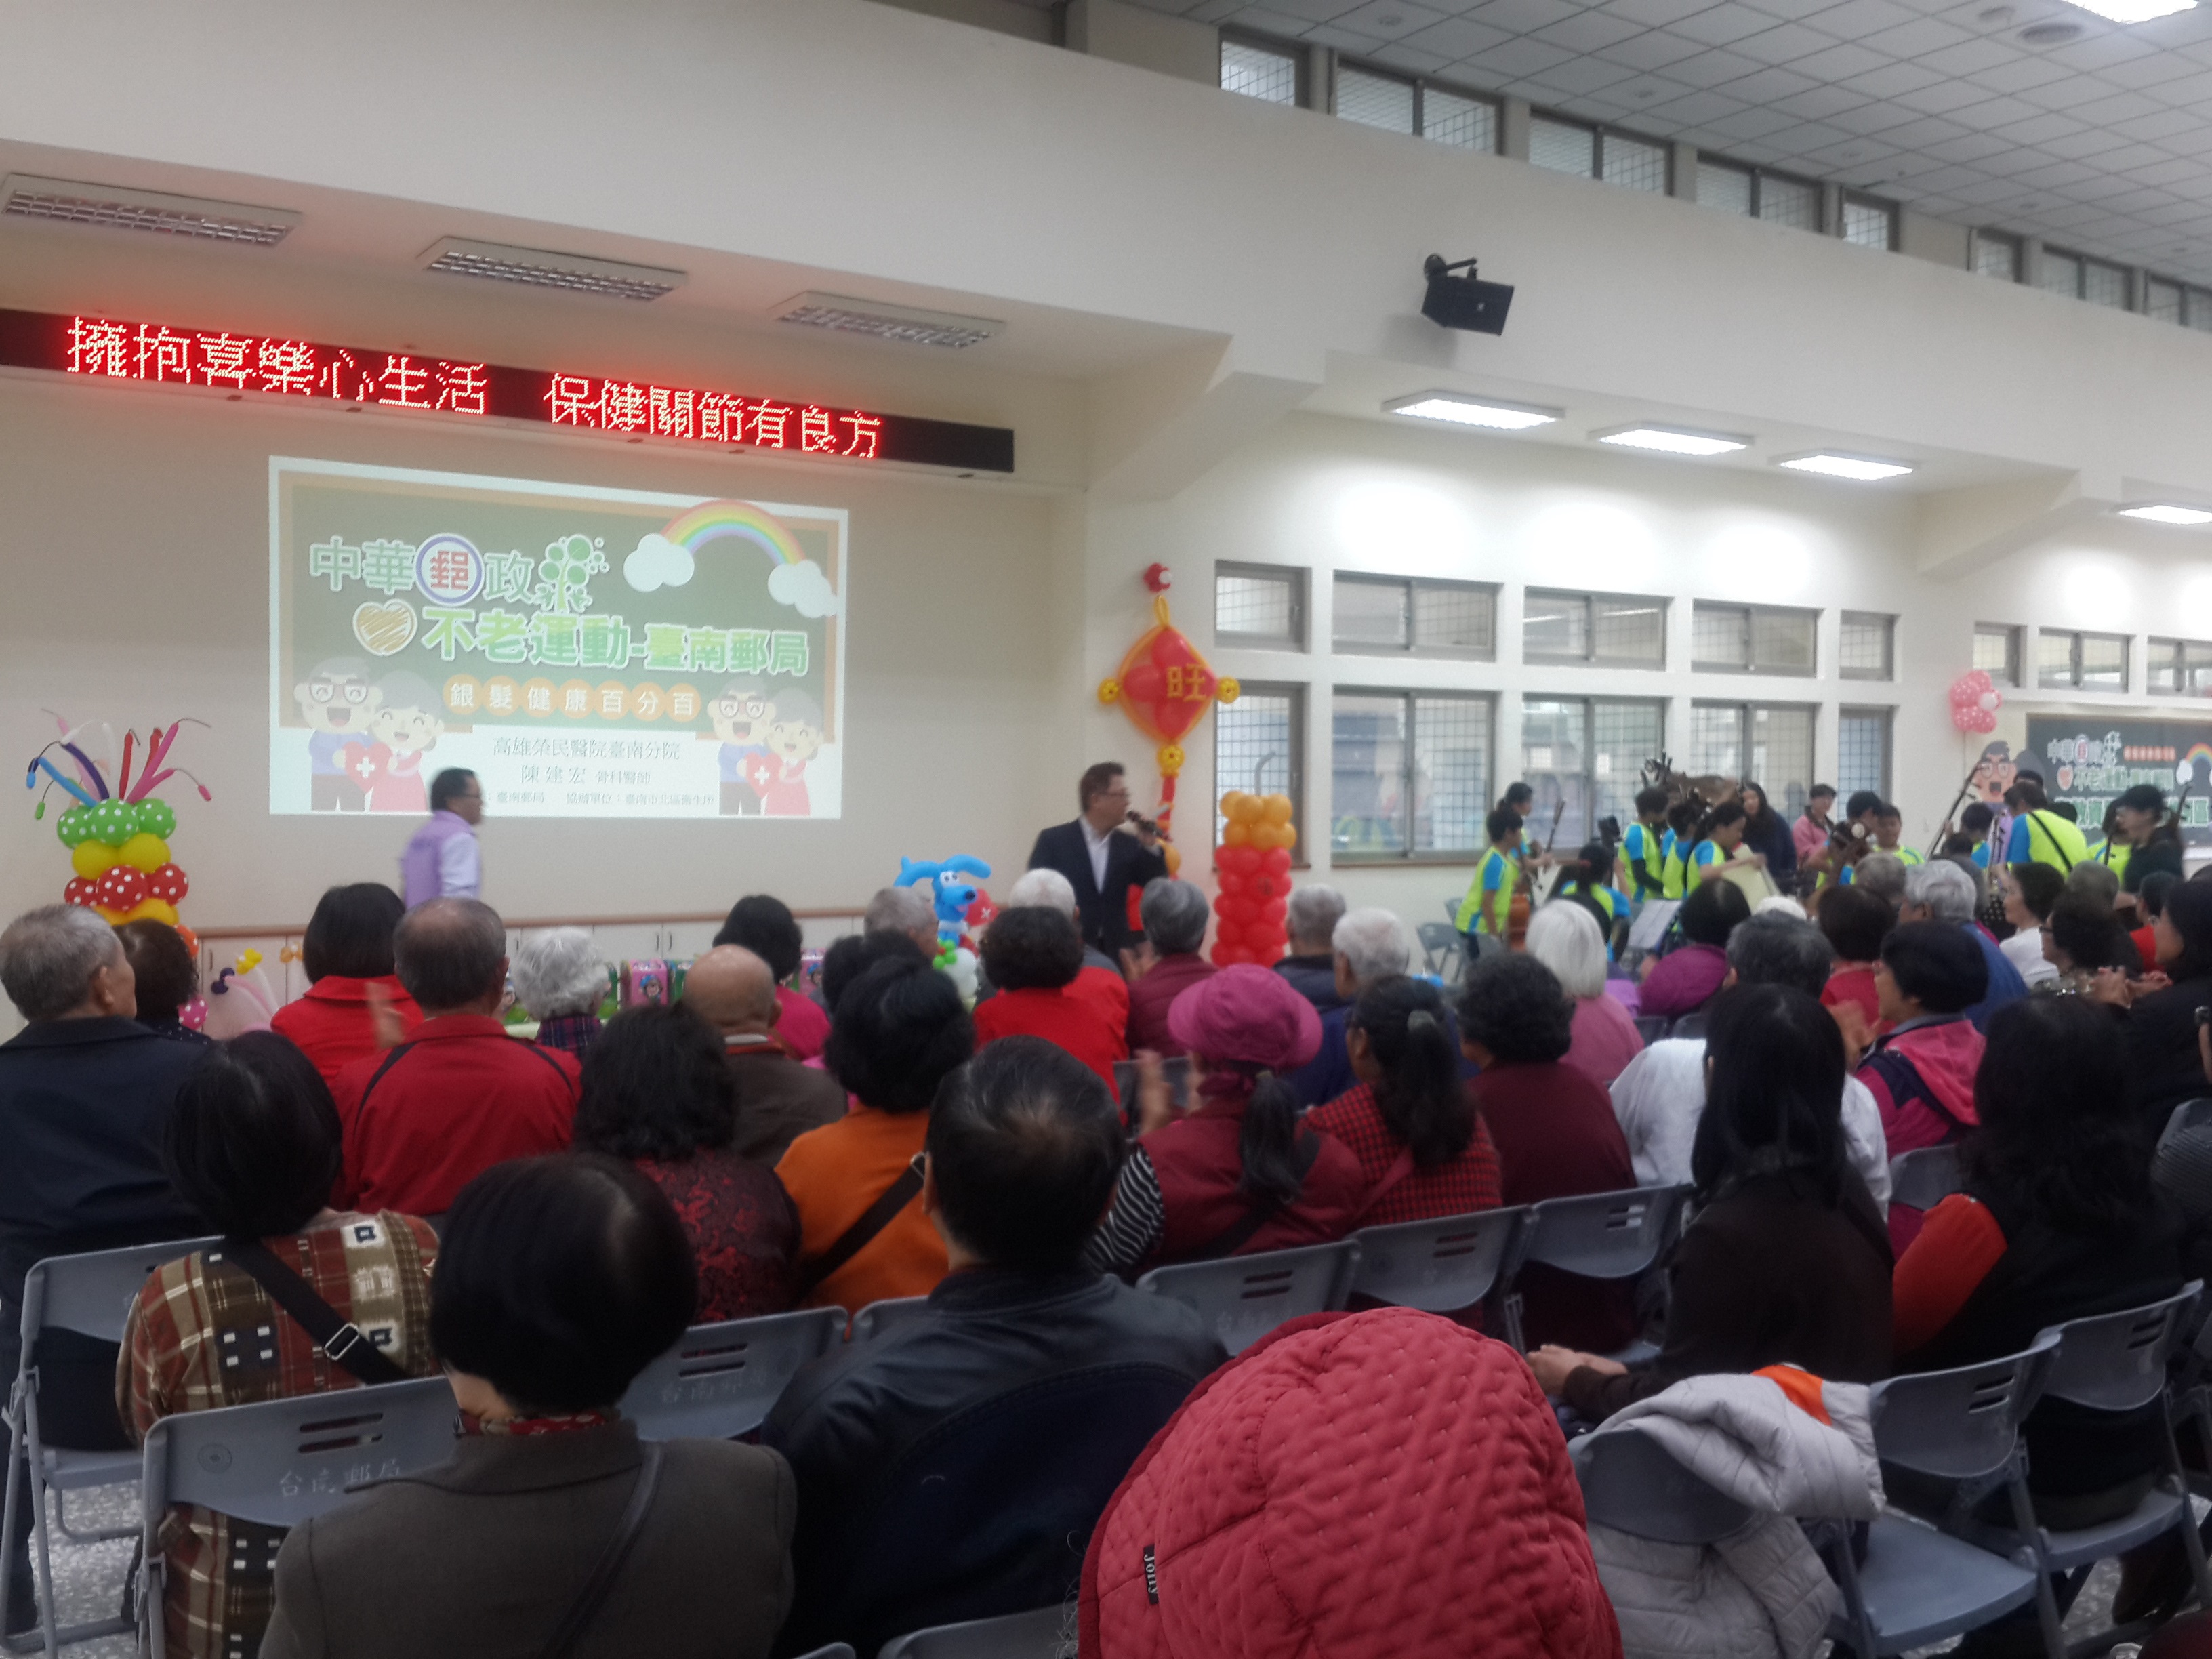 臺南郵局舉辦「中華郵政不老運動-銀髮健康百分百」活動